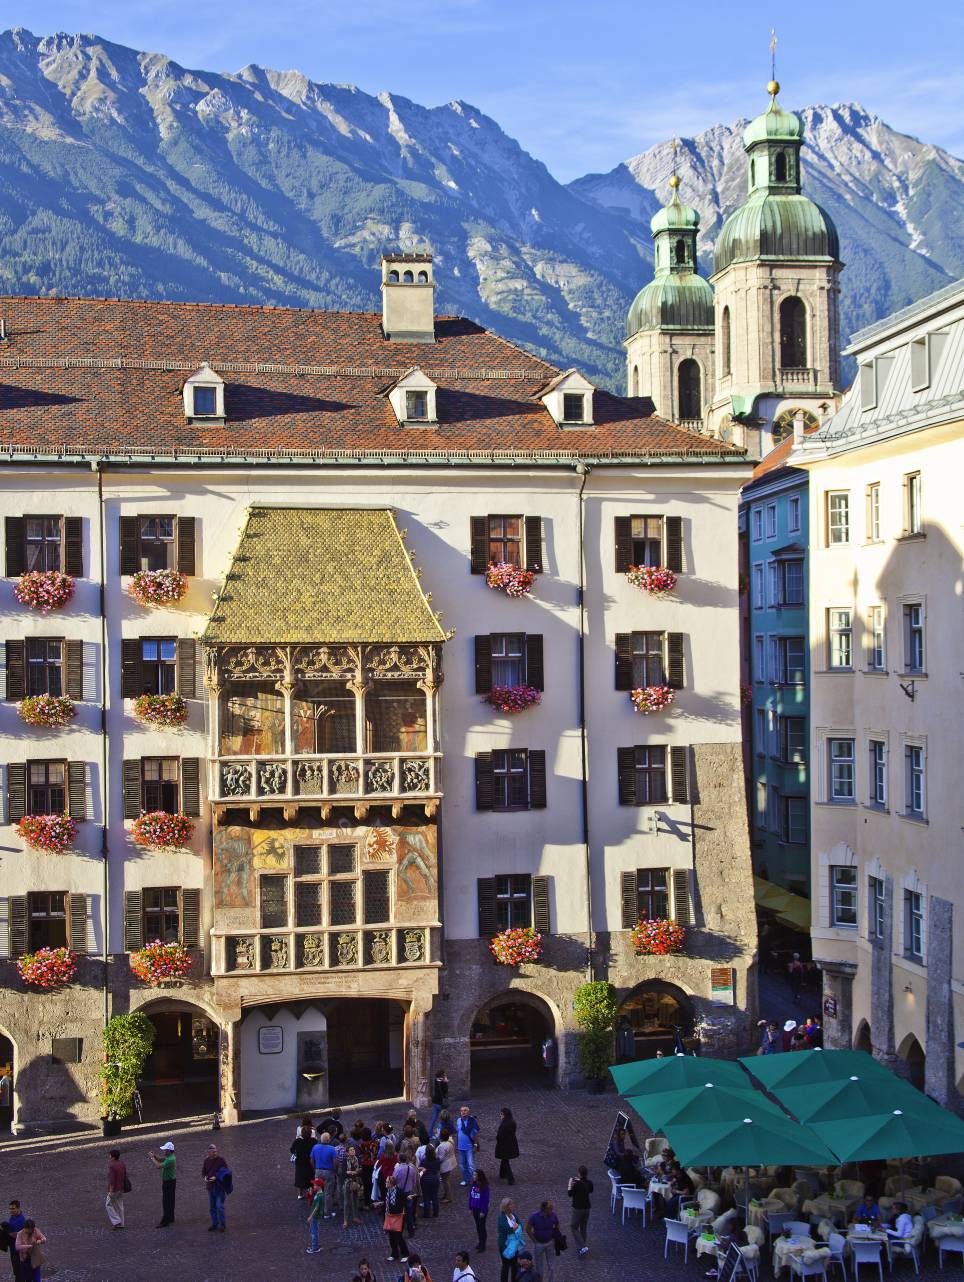 Gli highlight di Innsbruck,come il Tettuccio d'oro